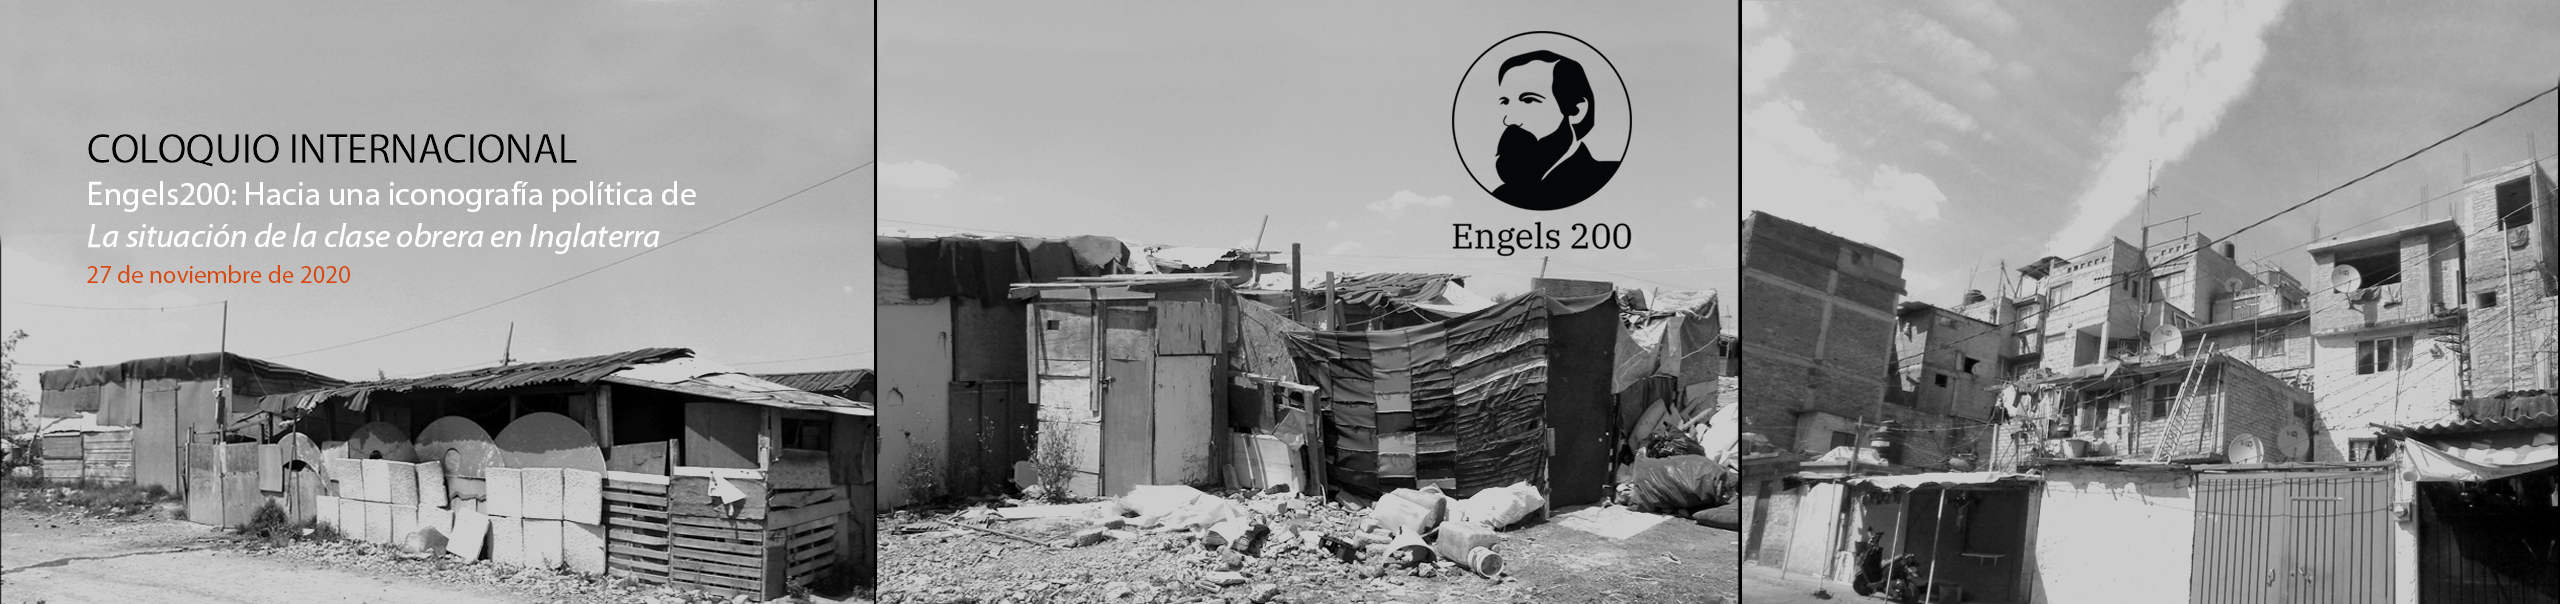 Coloquio internacional Engels200: Hacia una iconografía política de La situación de la clase obrera en Inglaterra